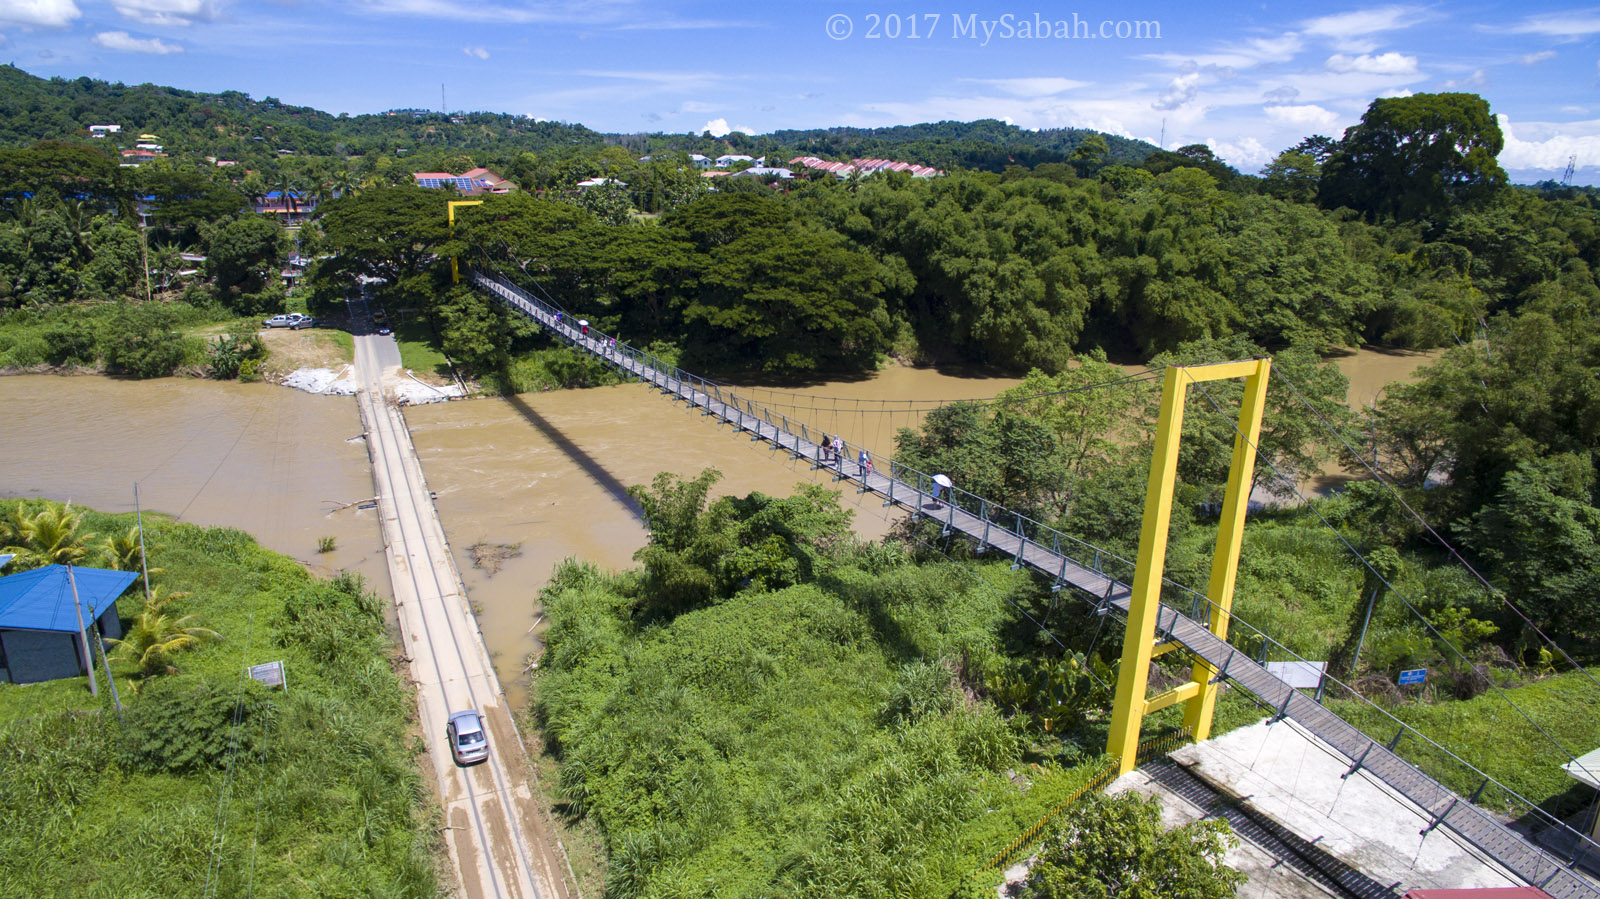 Jambatan Tamparuli the most famous bridge of Sabah | MySabah.com